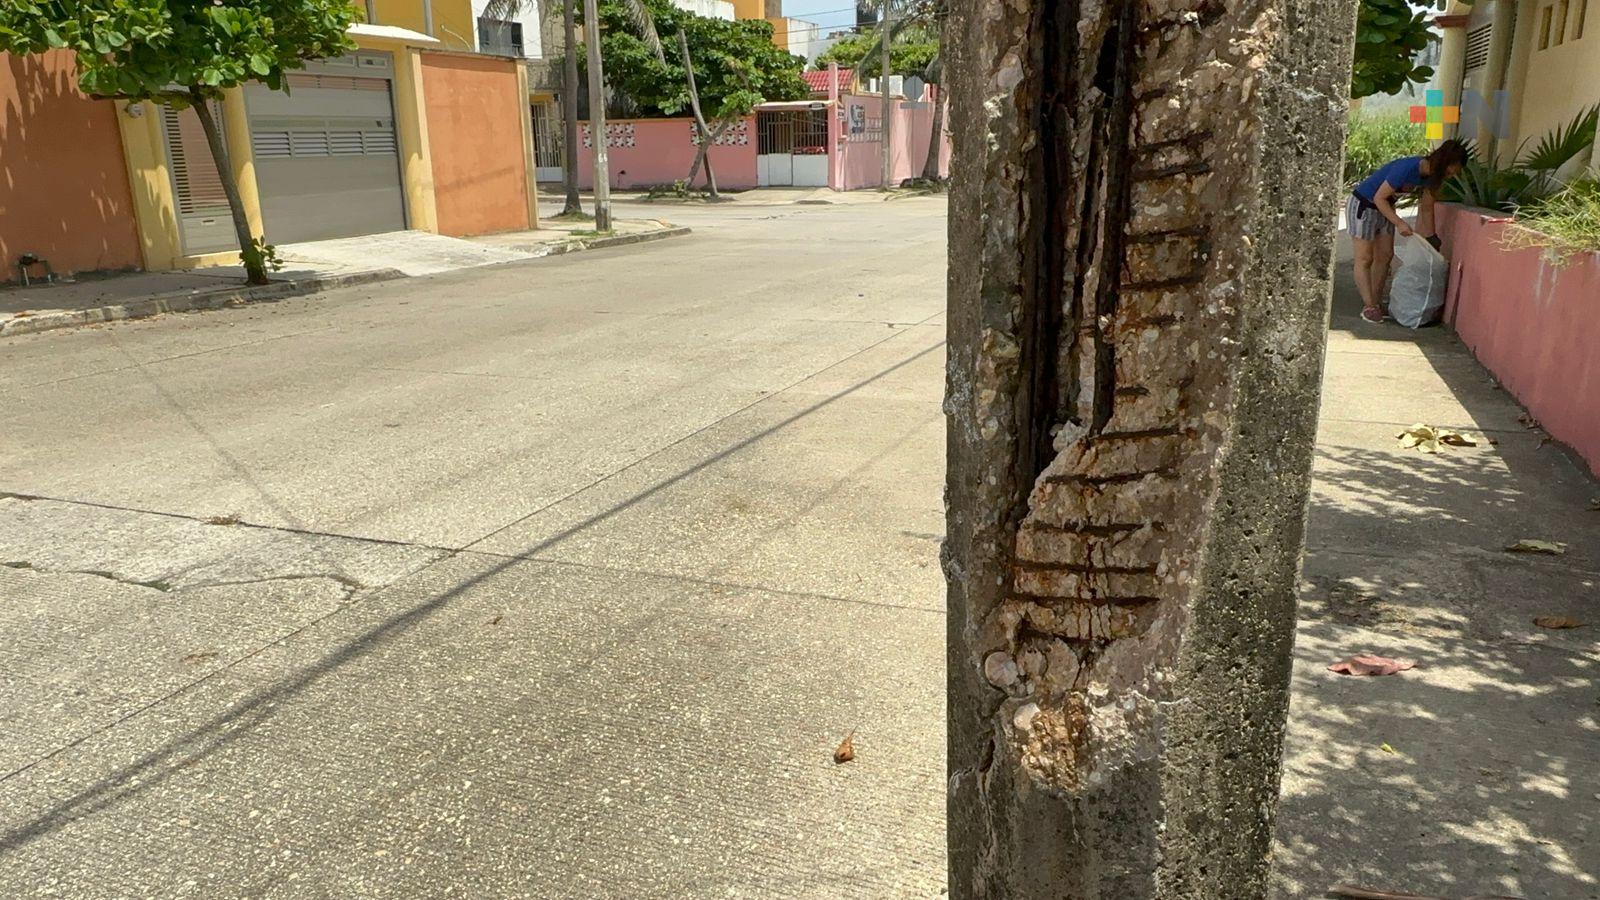 Reportes de postes de alumbrado deteriorados se deben reportar al ayuntamiento